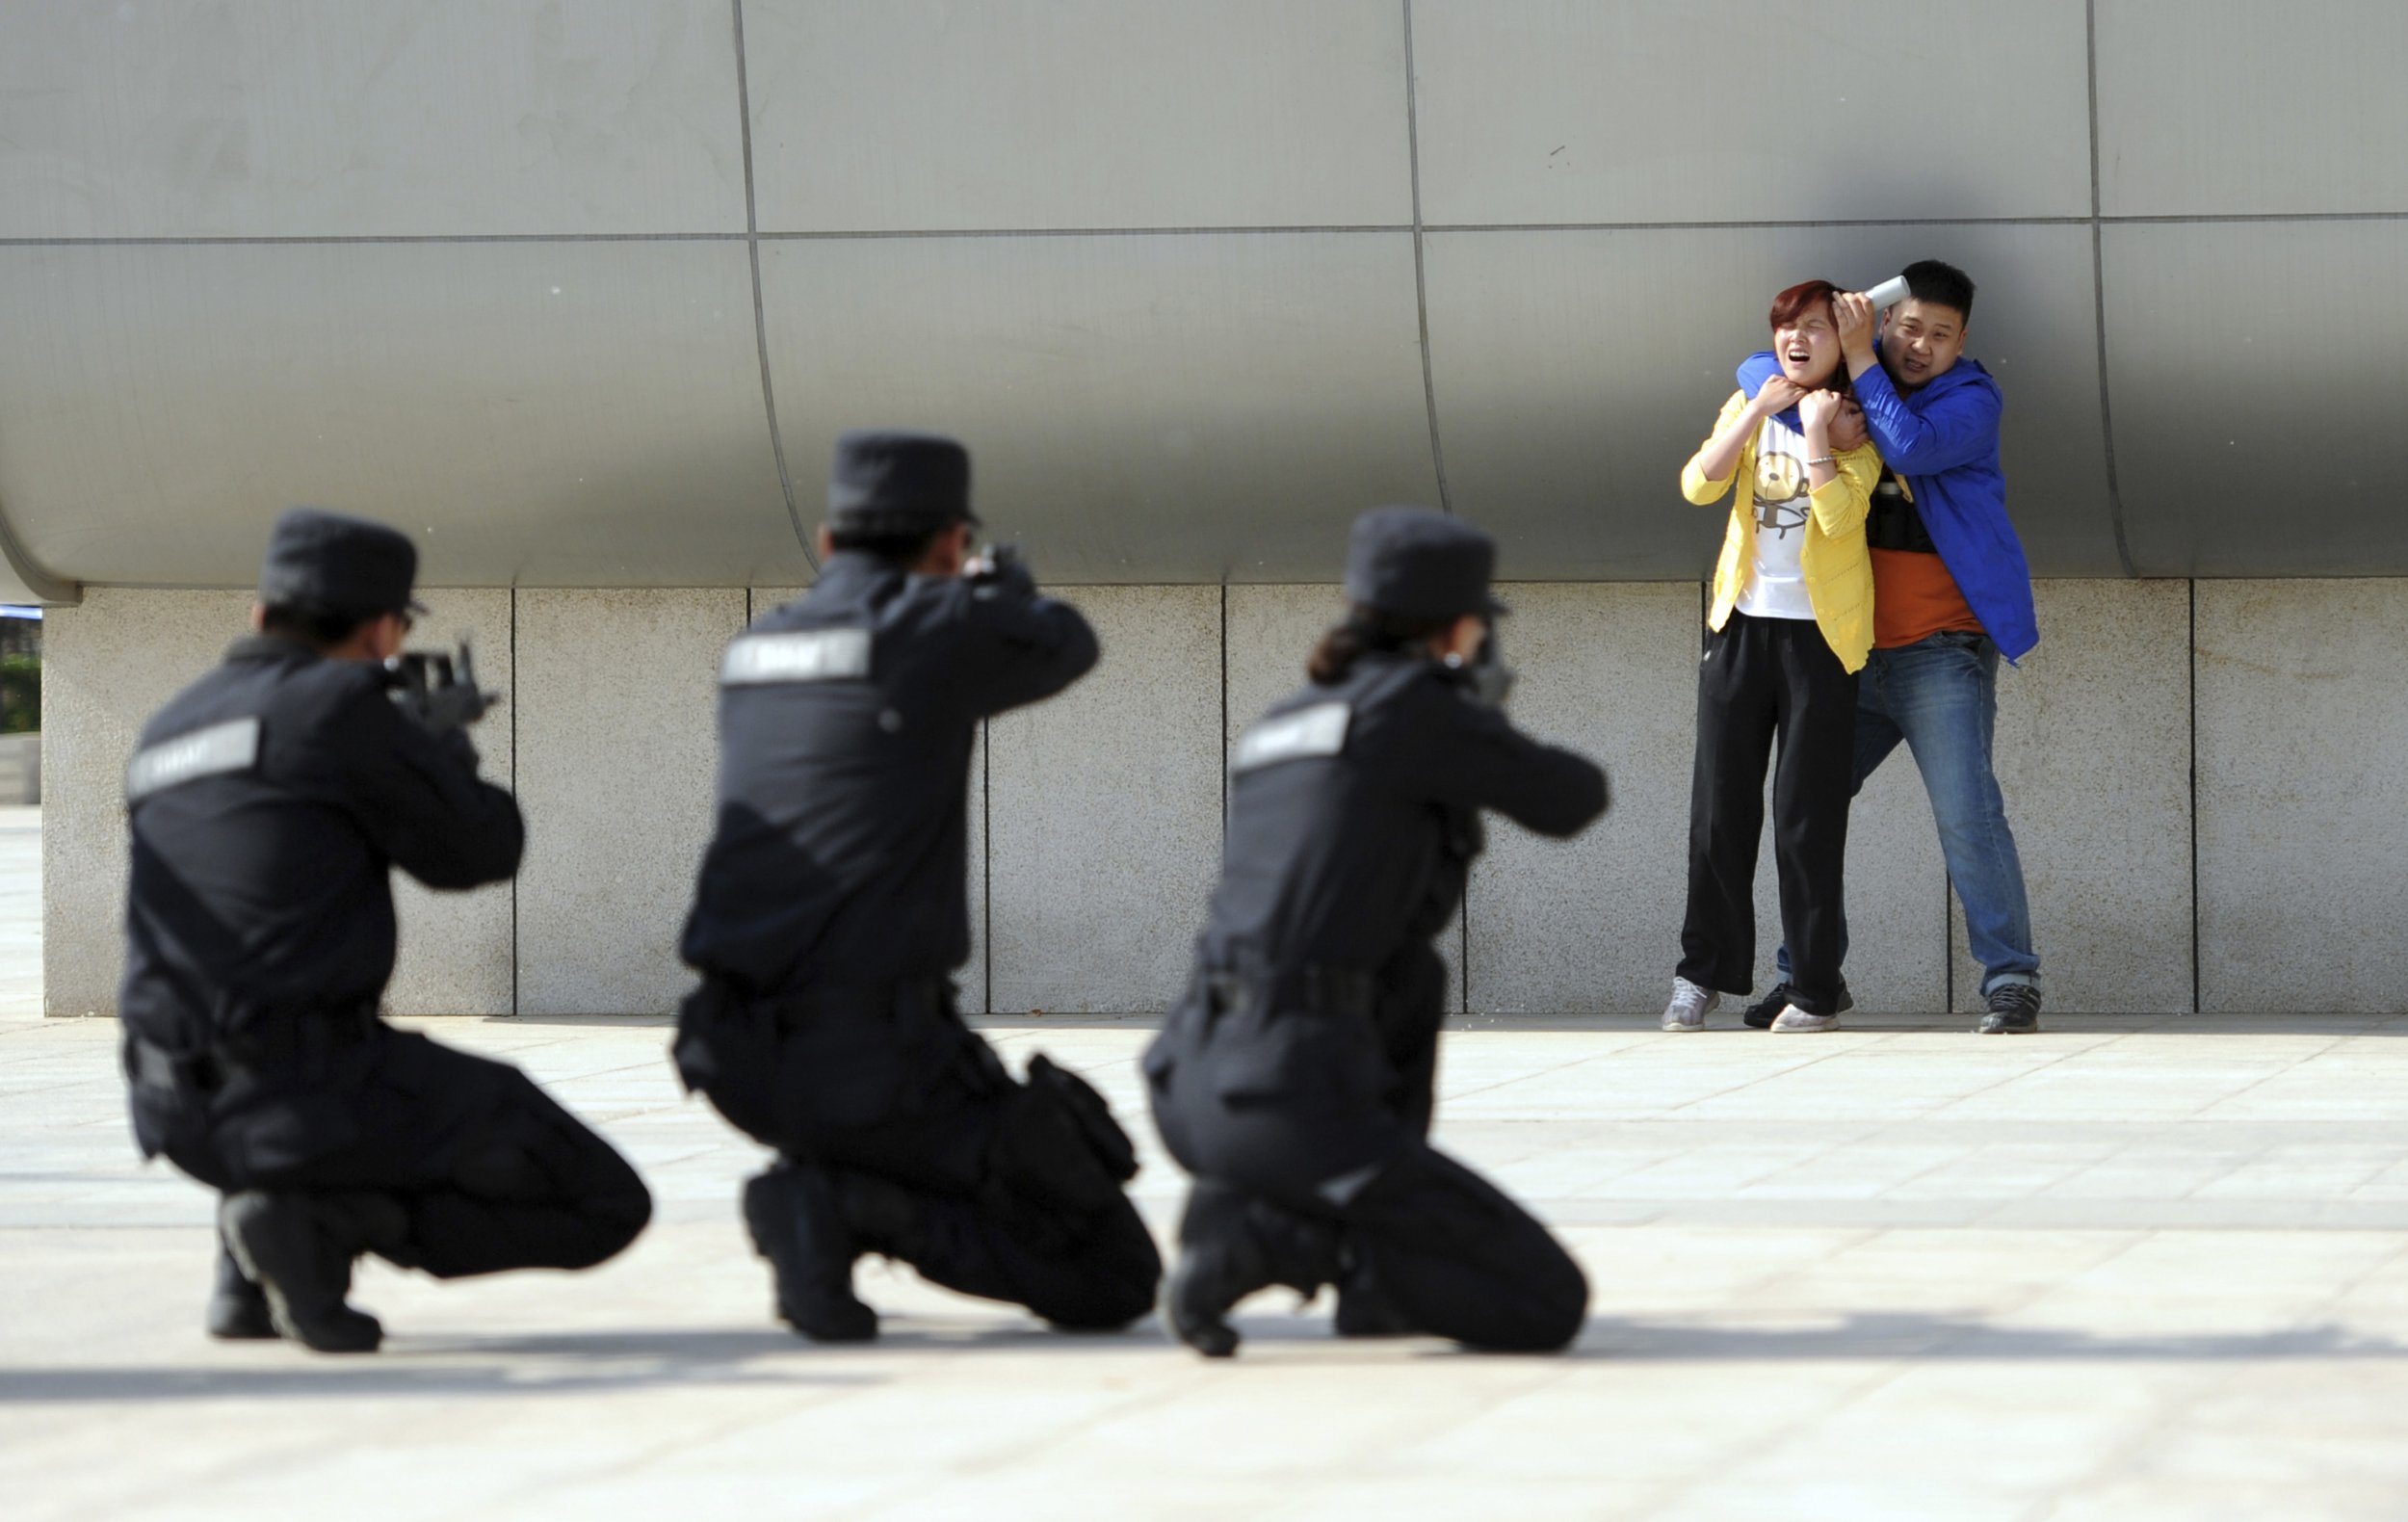 Борьбы с захватом заложников. Китаянки полицейские расстреливают. Полиция и террористы. Полицейский освобождает заложников.